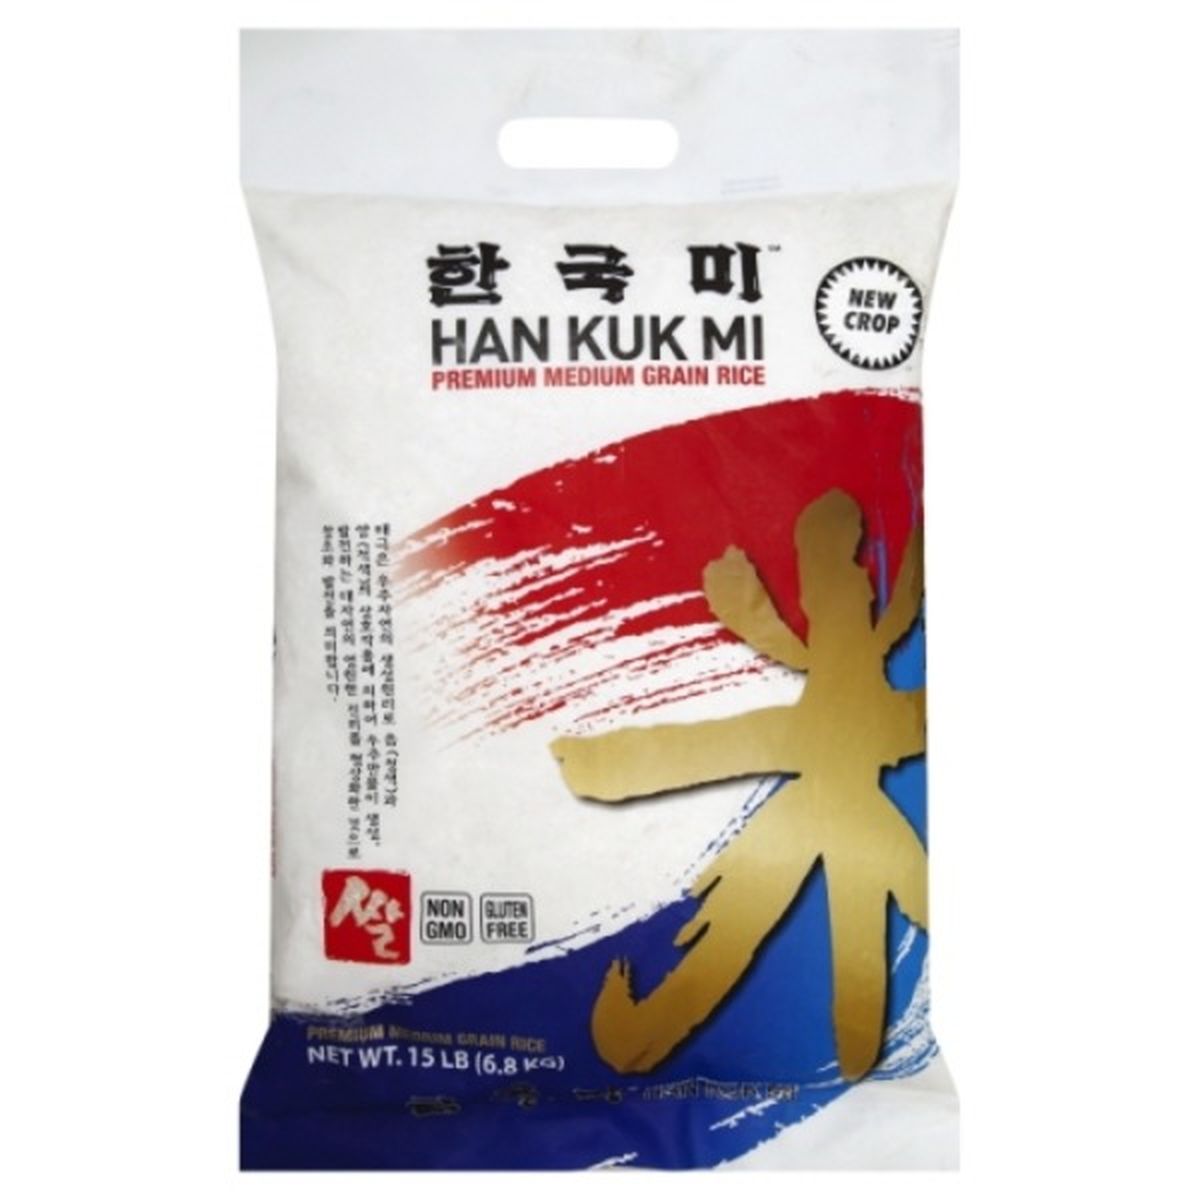 Calories in Han Kuk Mi Rice, Premium, Medium Grain